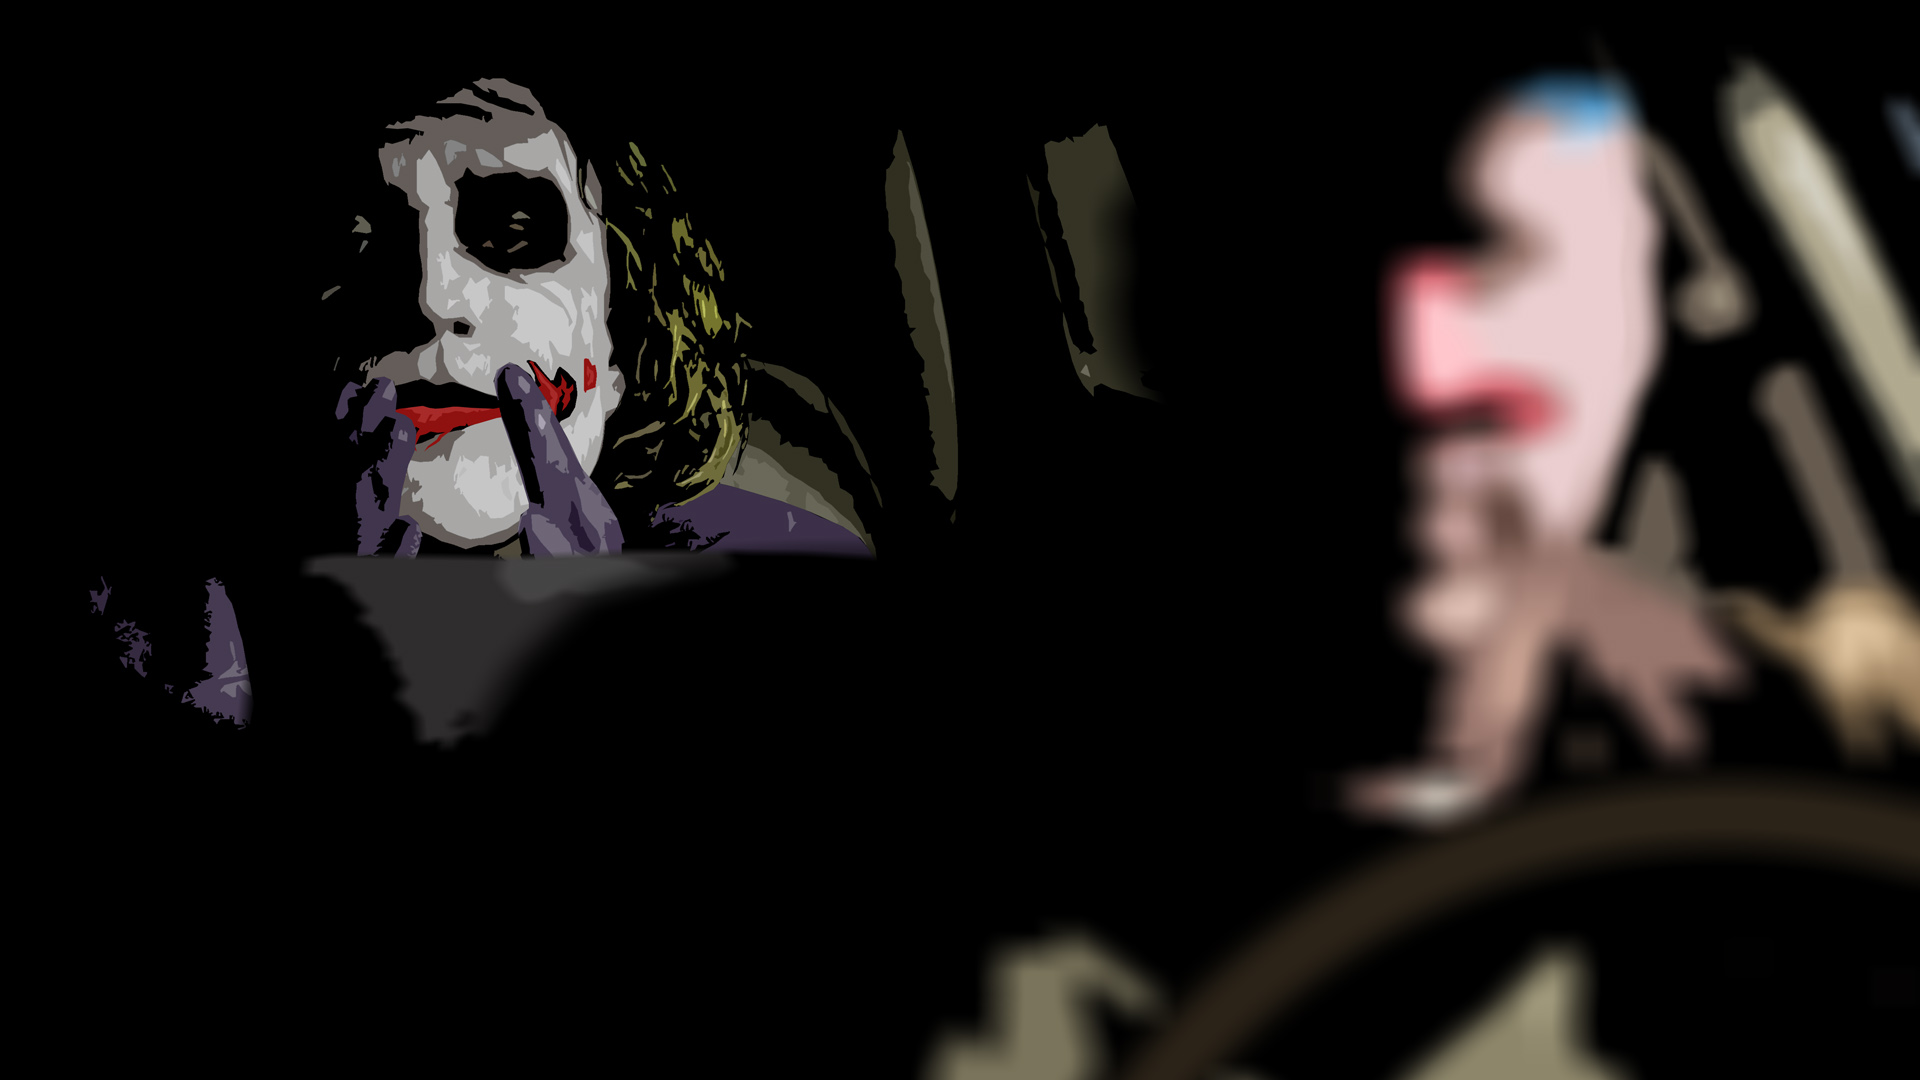 Обои на телефон Джокер лежит на машине. Пила джокер кинотеатр